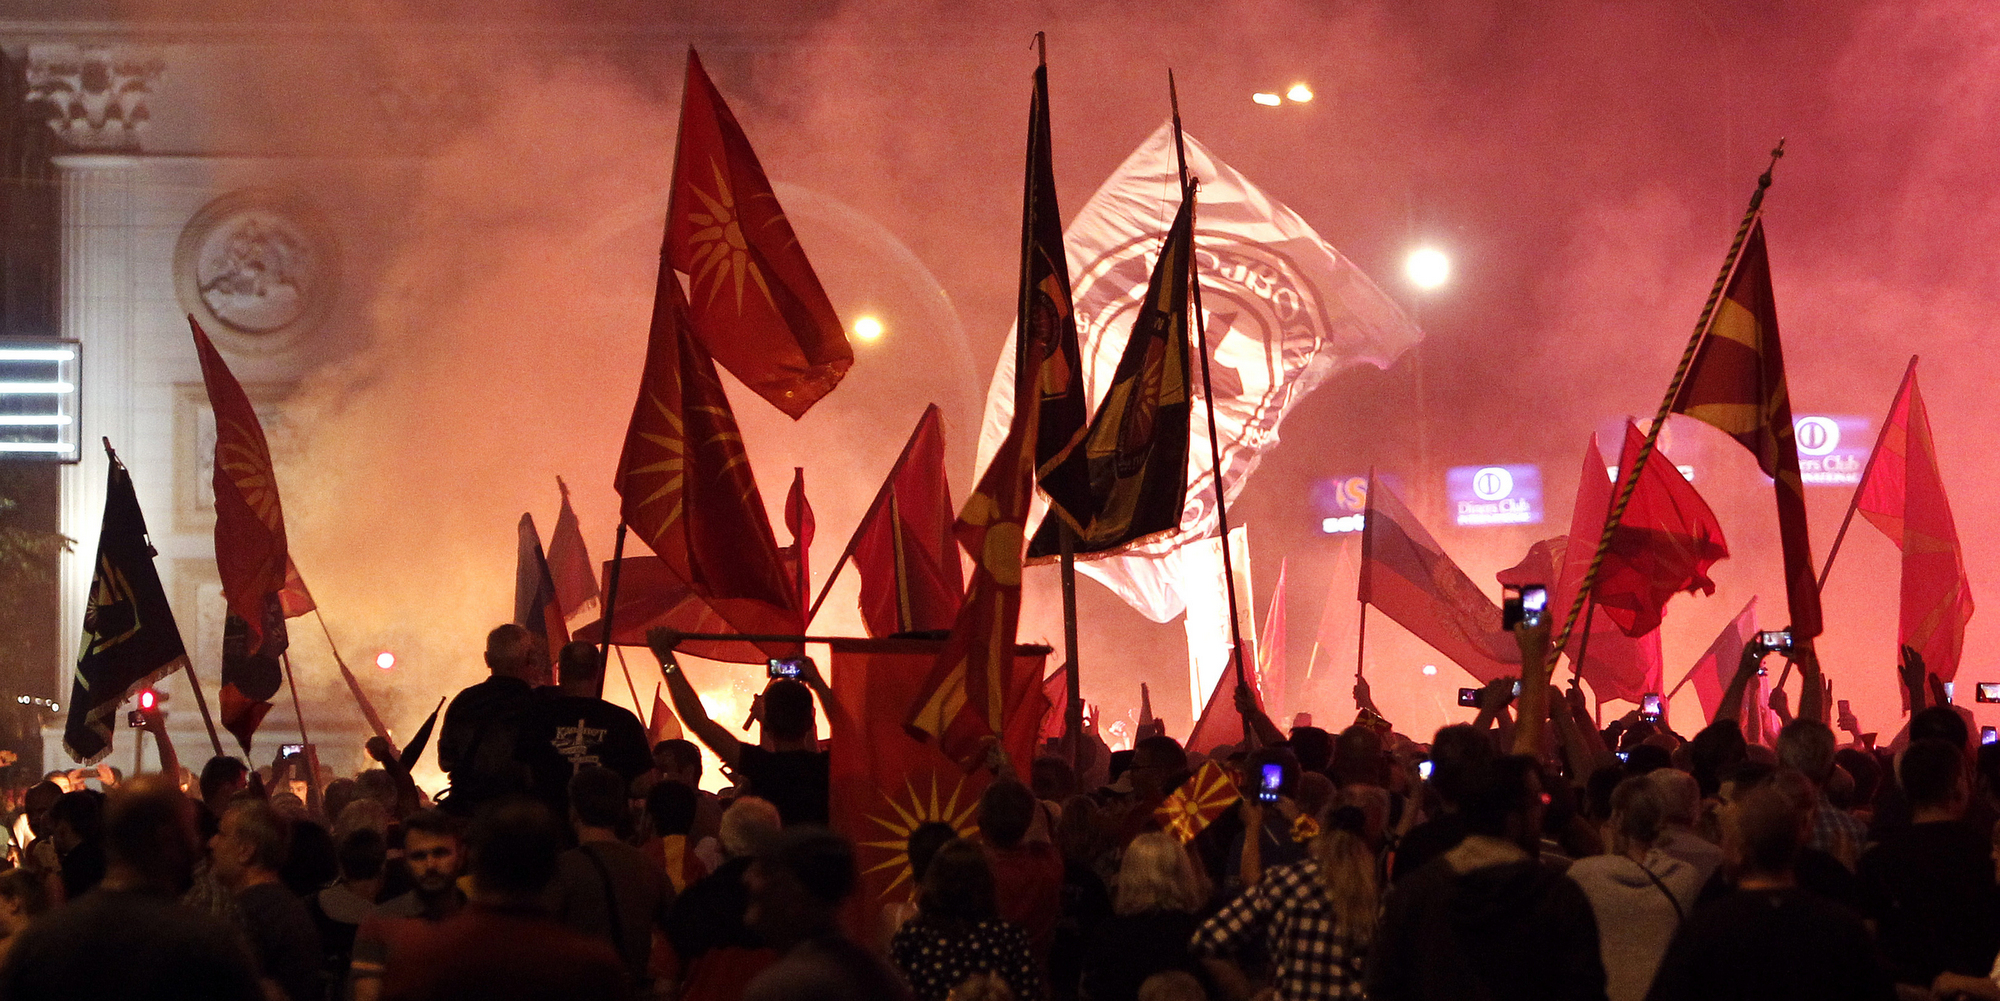 Μήνυμα προς τους 7 αποστάτες βουλευτές από το VMRO: «Ο Σουλτάνος  Μωάμεθ Β΄ αποκεφάλισε τους προδότες στην Πόλη»